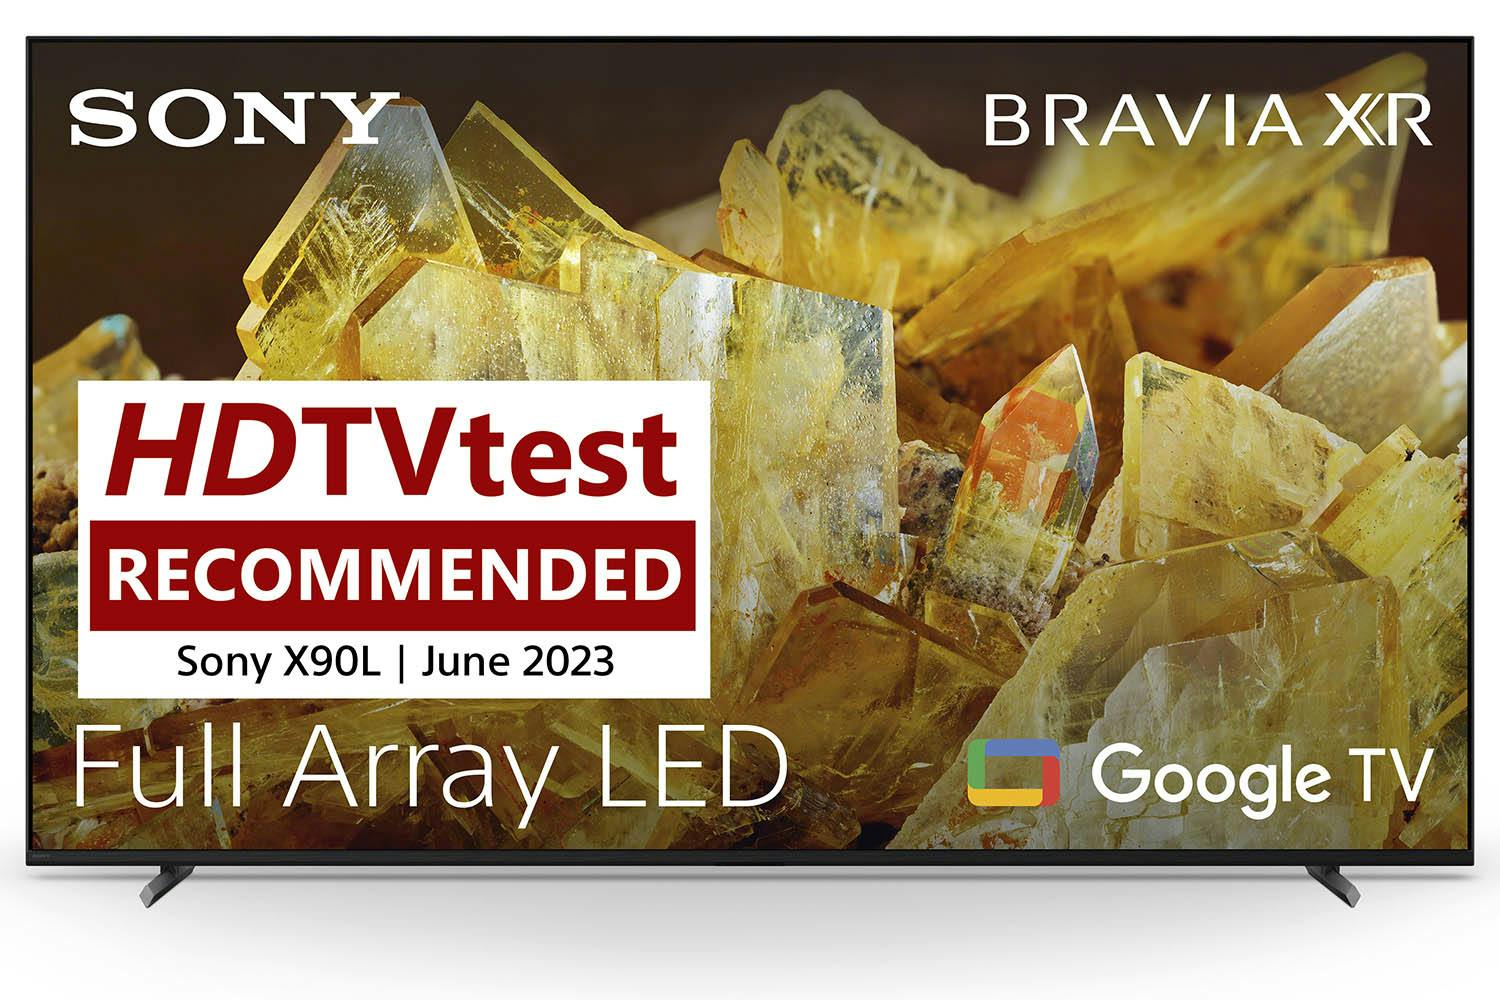 Sony X90L Bravia XR 75" 4K Ultra HD HDR Smart TV | XR75X90LU